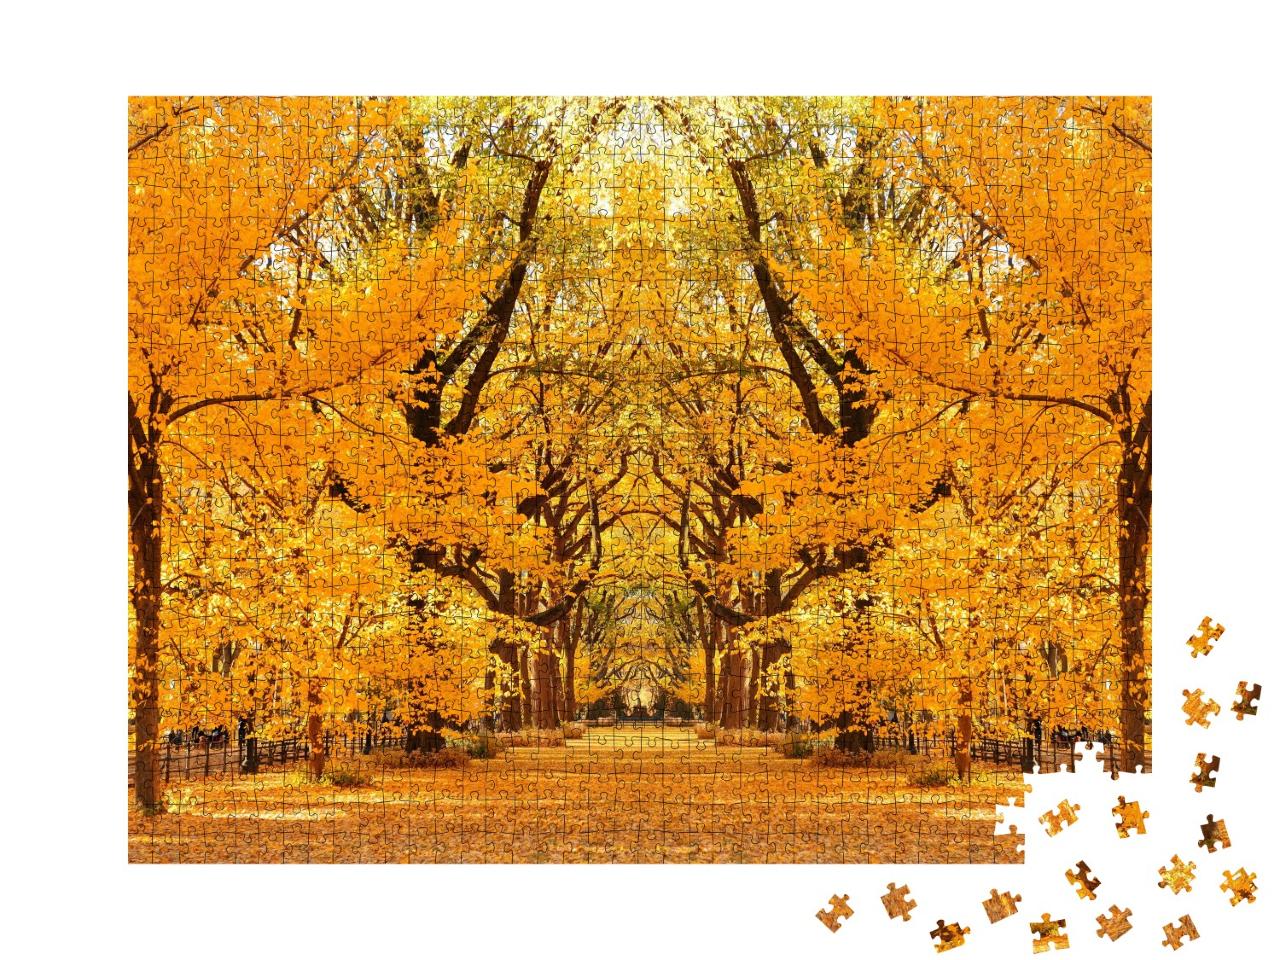 Puzzle de 1000 pièces « Central Park Herbst à Midtown Manhattan New York City »